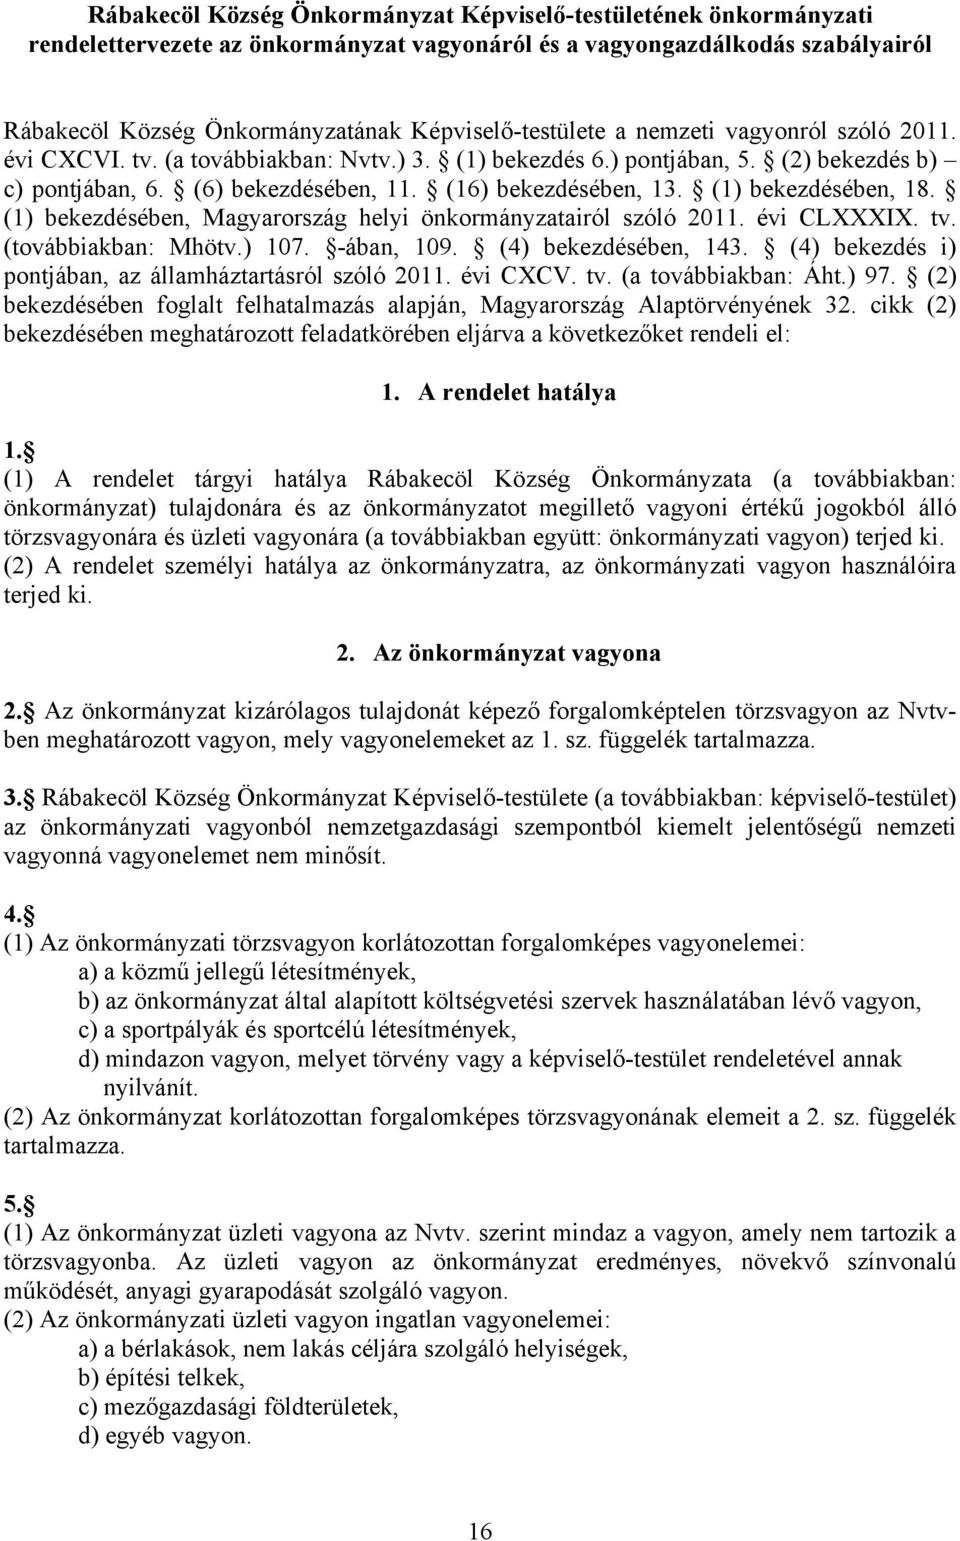 (16) bekezdésében, 13. (1) bekezdésében, 18. (1) bekezdésében, Magyarország helyi önkormányzatairól szóló 2011. évi CLXXXIX. tv. (továbbiakban: Mhötv.) 107. -ában, 109. (4) bekezdésében, 143.